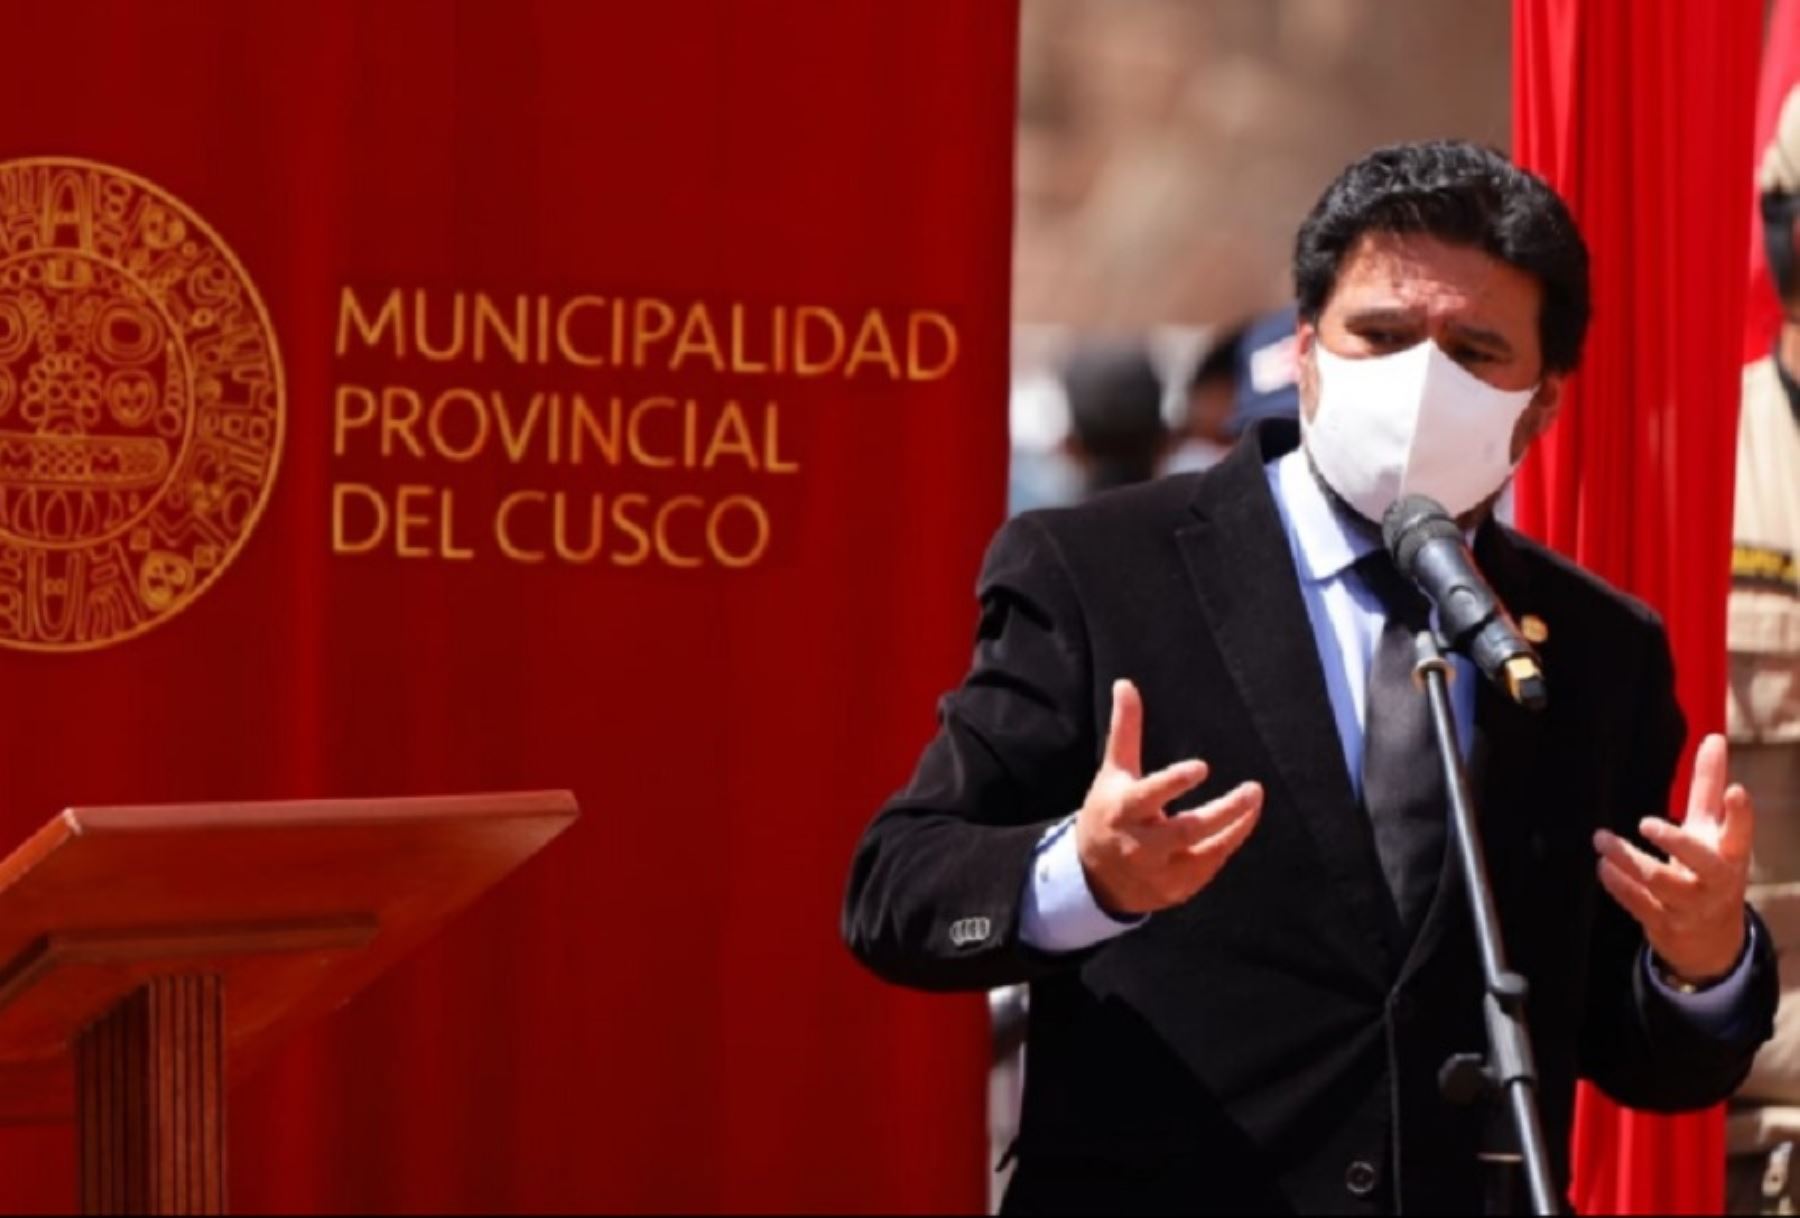 El alcalde provincial del Cusco, Víctor Boluarte Medina, dio positivo al covid-19 y pasará los siguientes días en cuarentena, según informó un comunicado de la municipalidad.